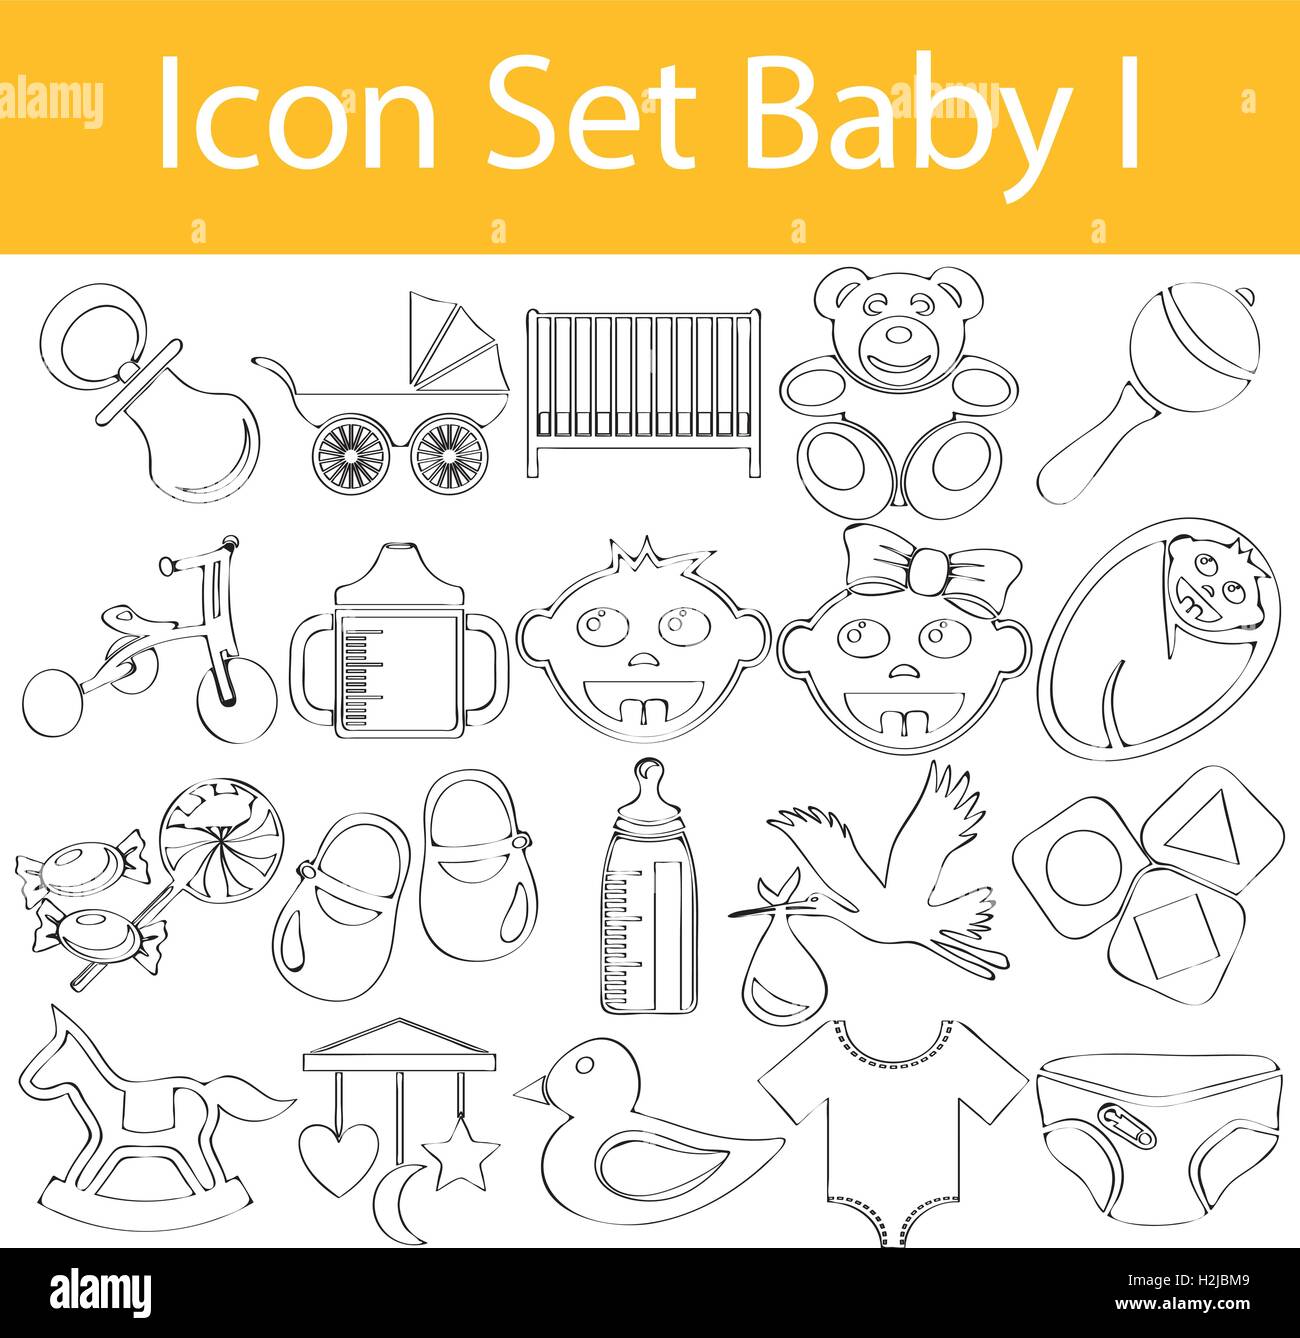 Appelée Doodle bordée Icon Set Bébé avec 20 icônes pour l'utilisation créative en design graphique Illustration de Vecteur